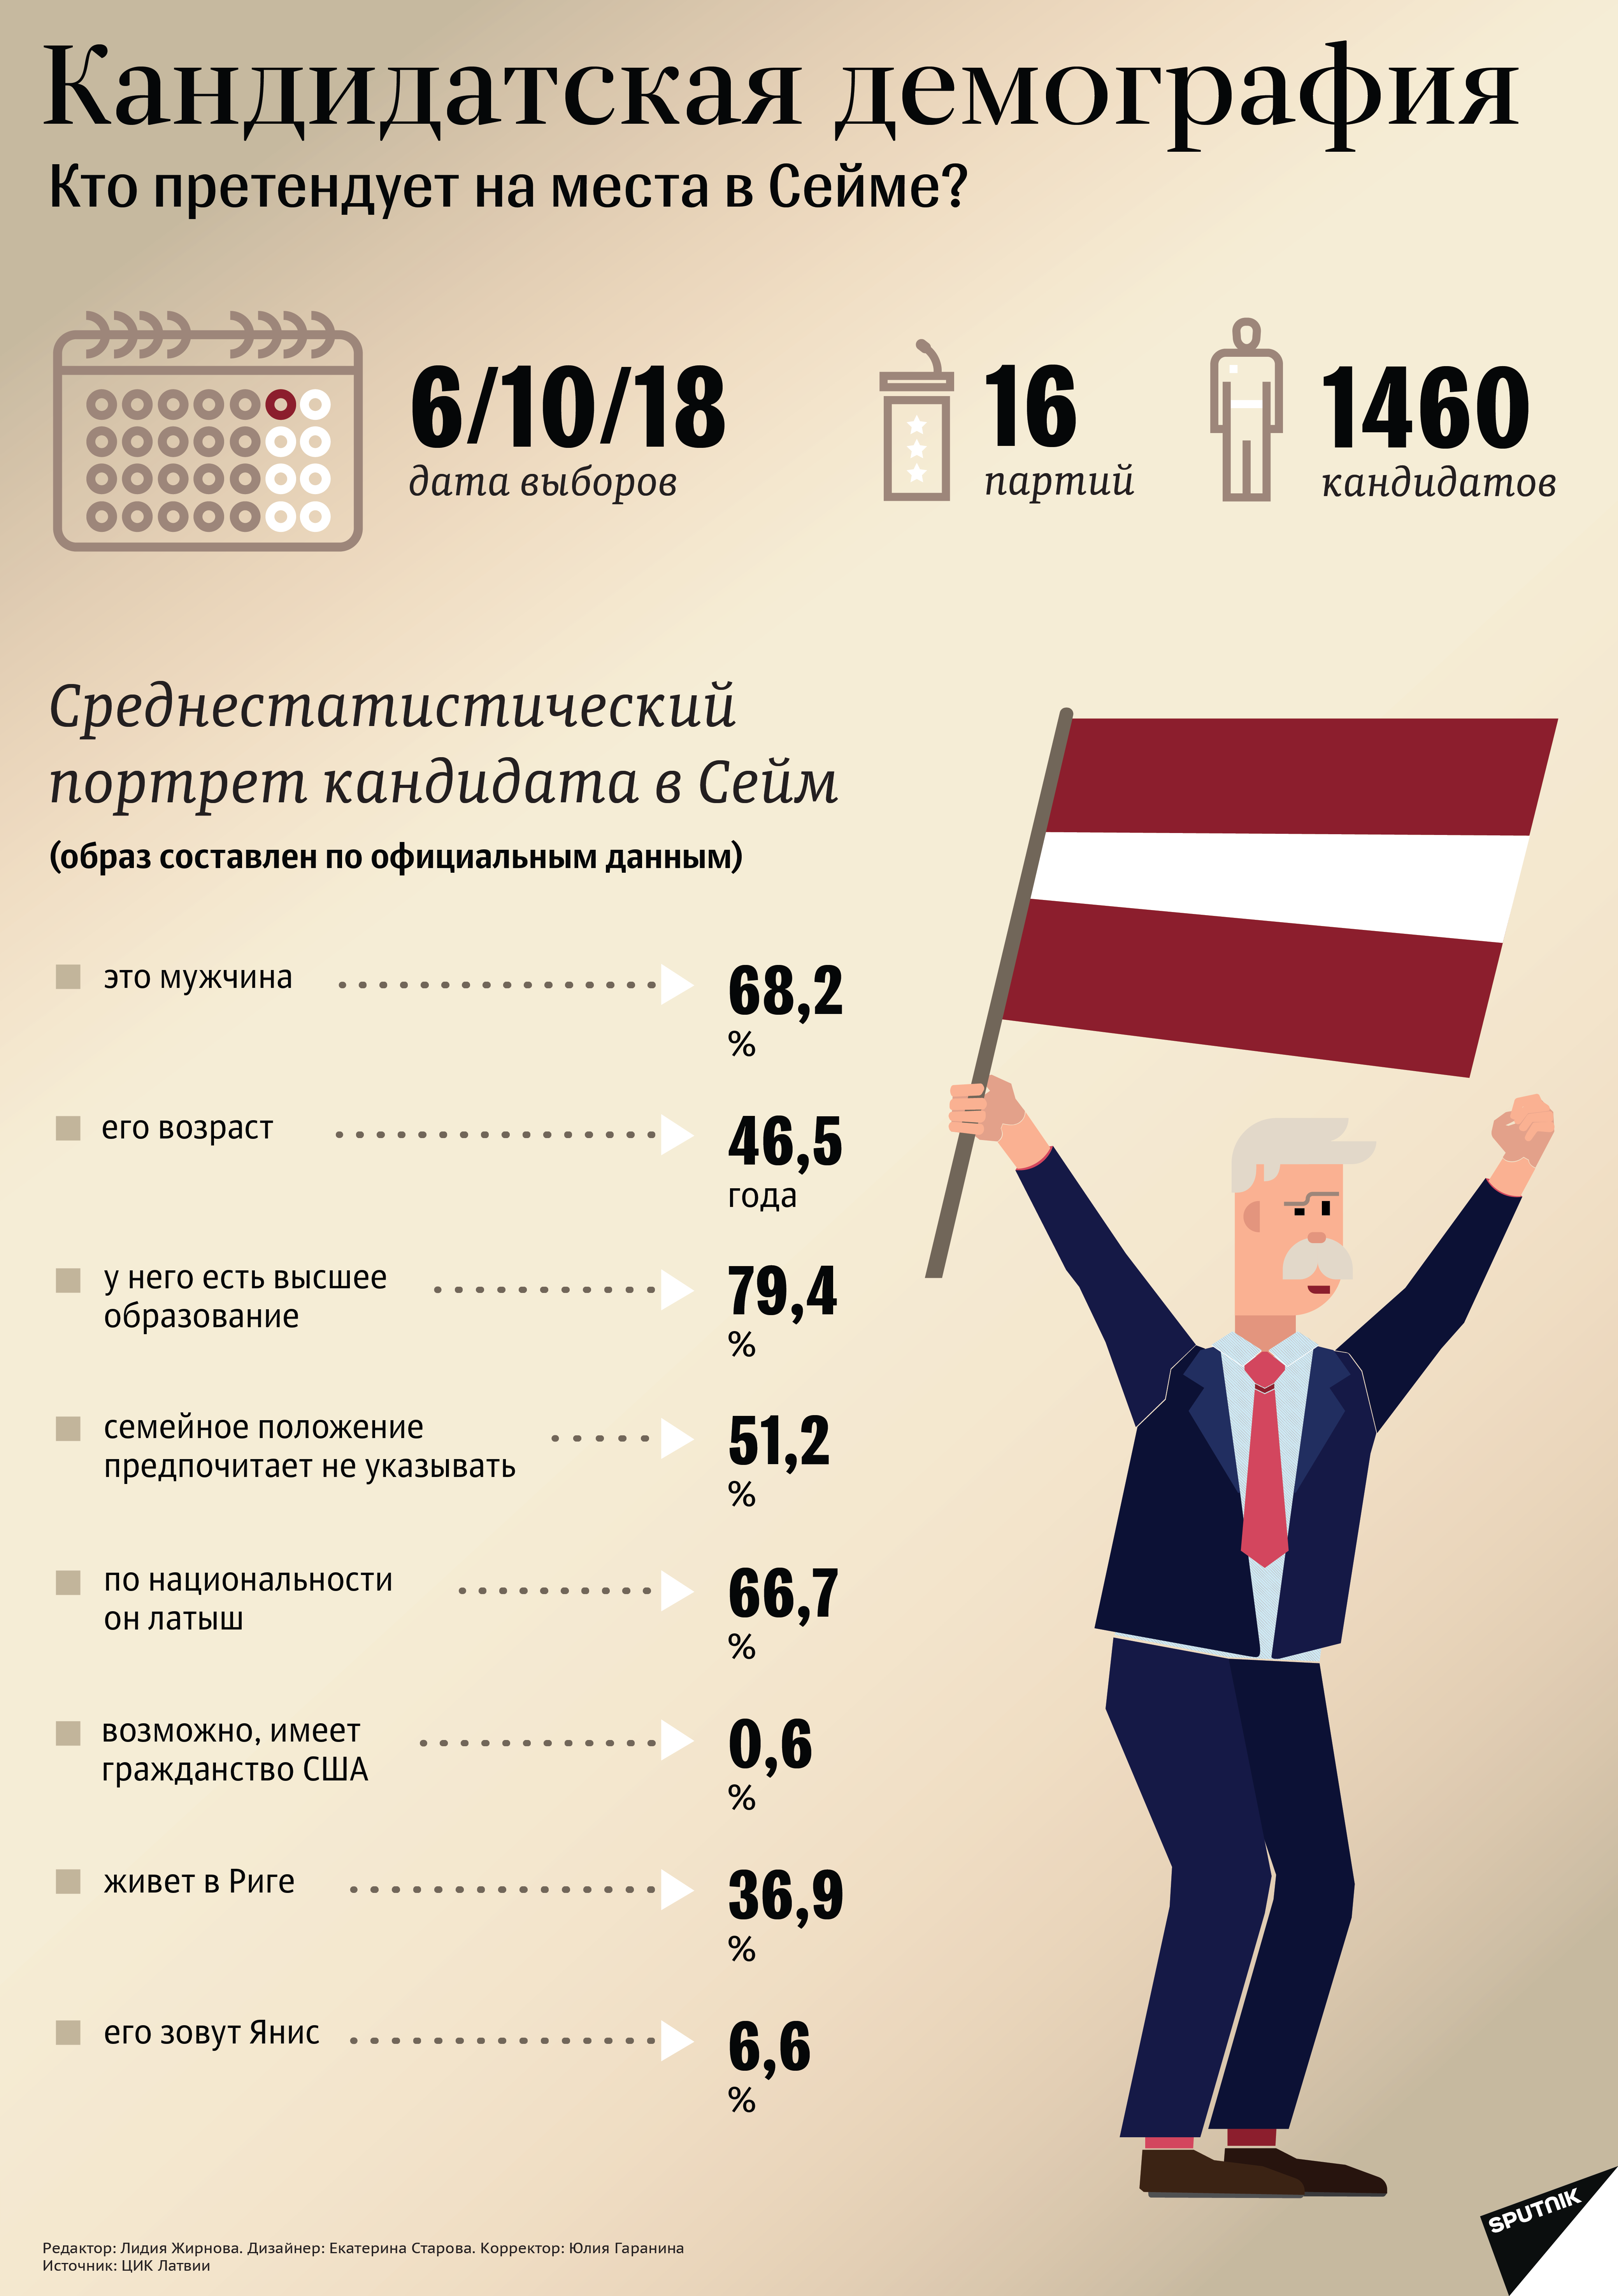 Кандидатcкая демография - Sputnik Латвия